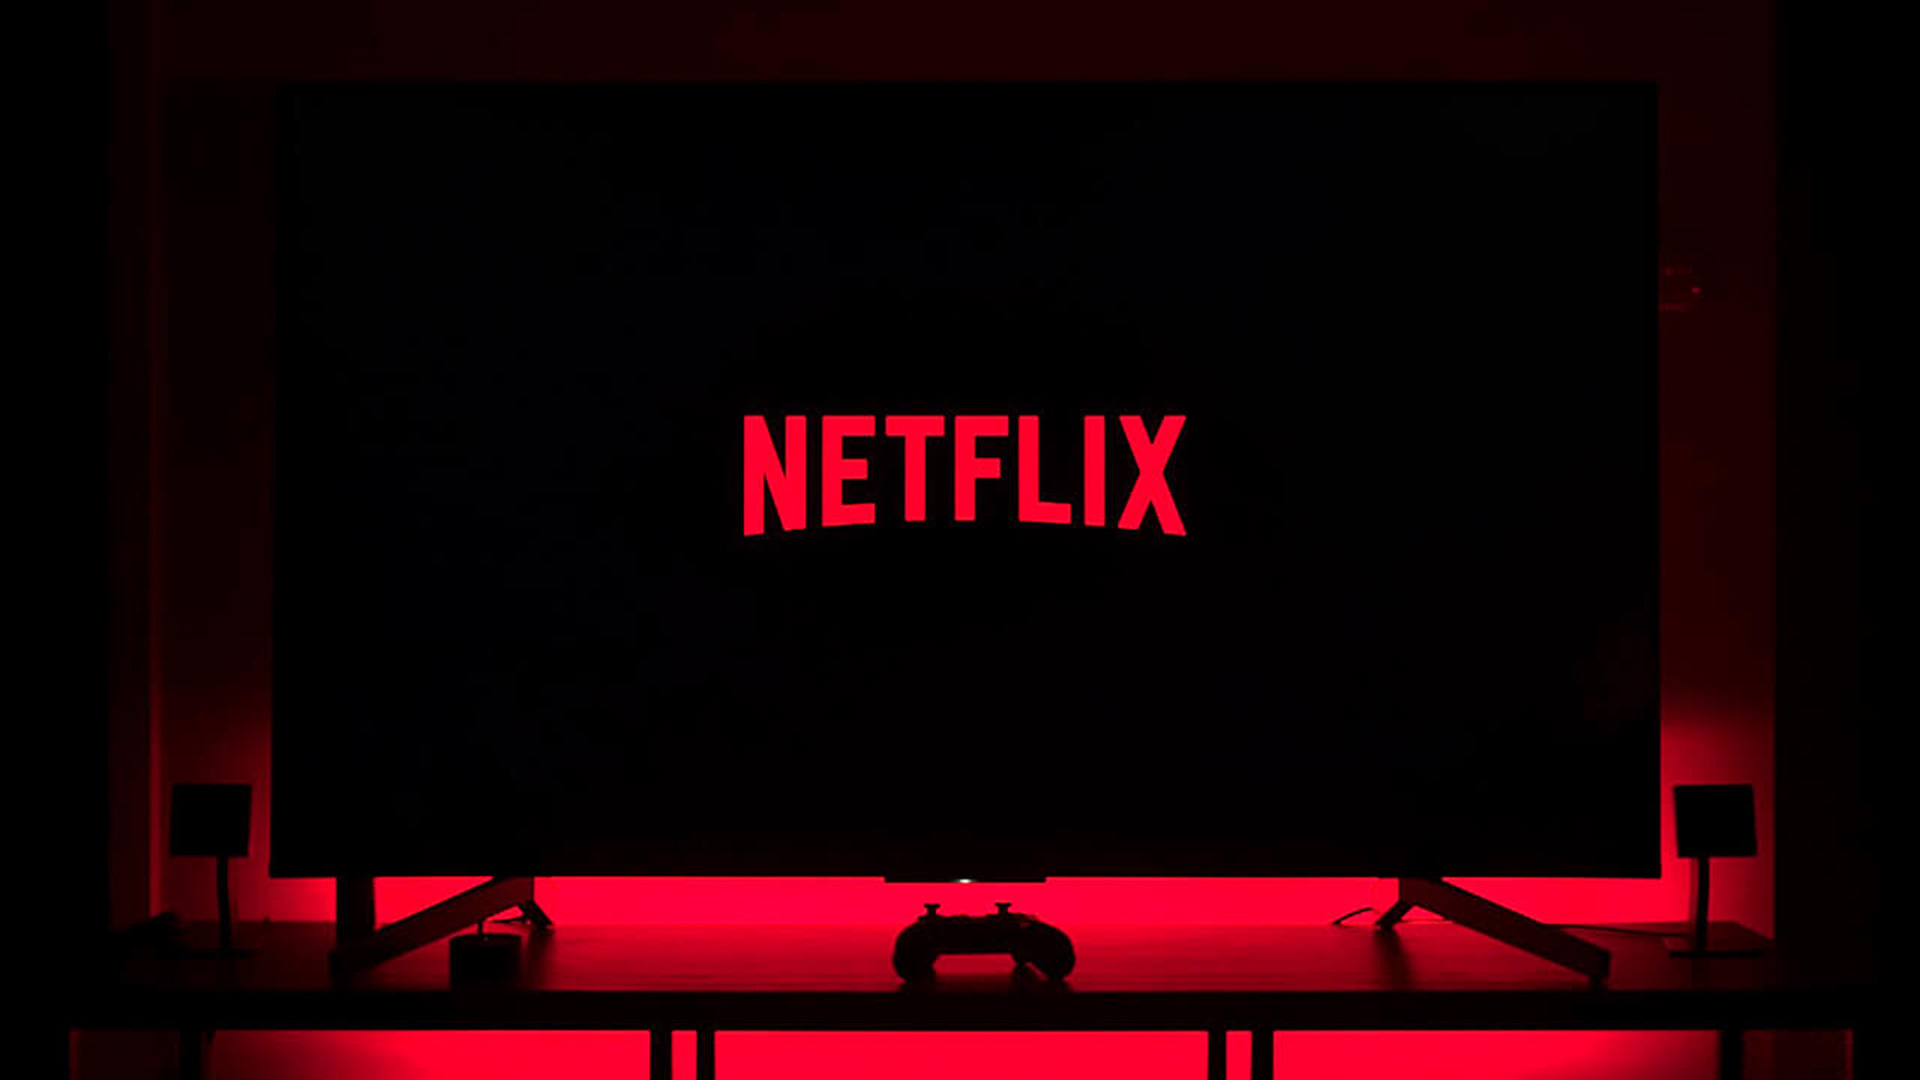 Abonnés perdus par Netflix : est-il temps d’opter pour un forfait plus abordable qui inclut des publicités ?